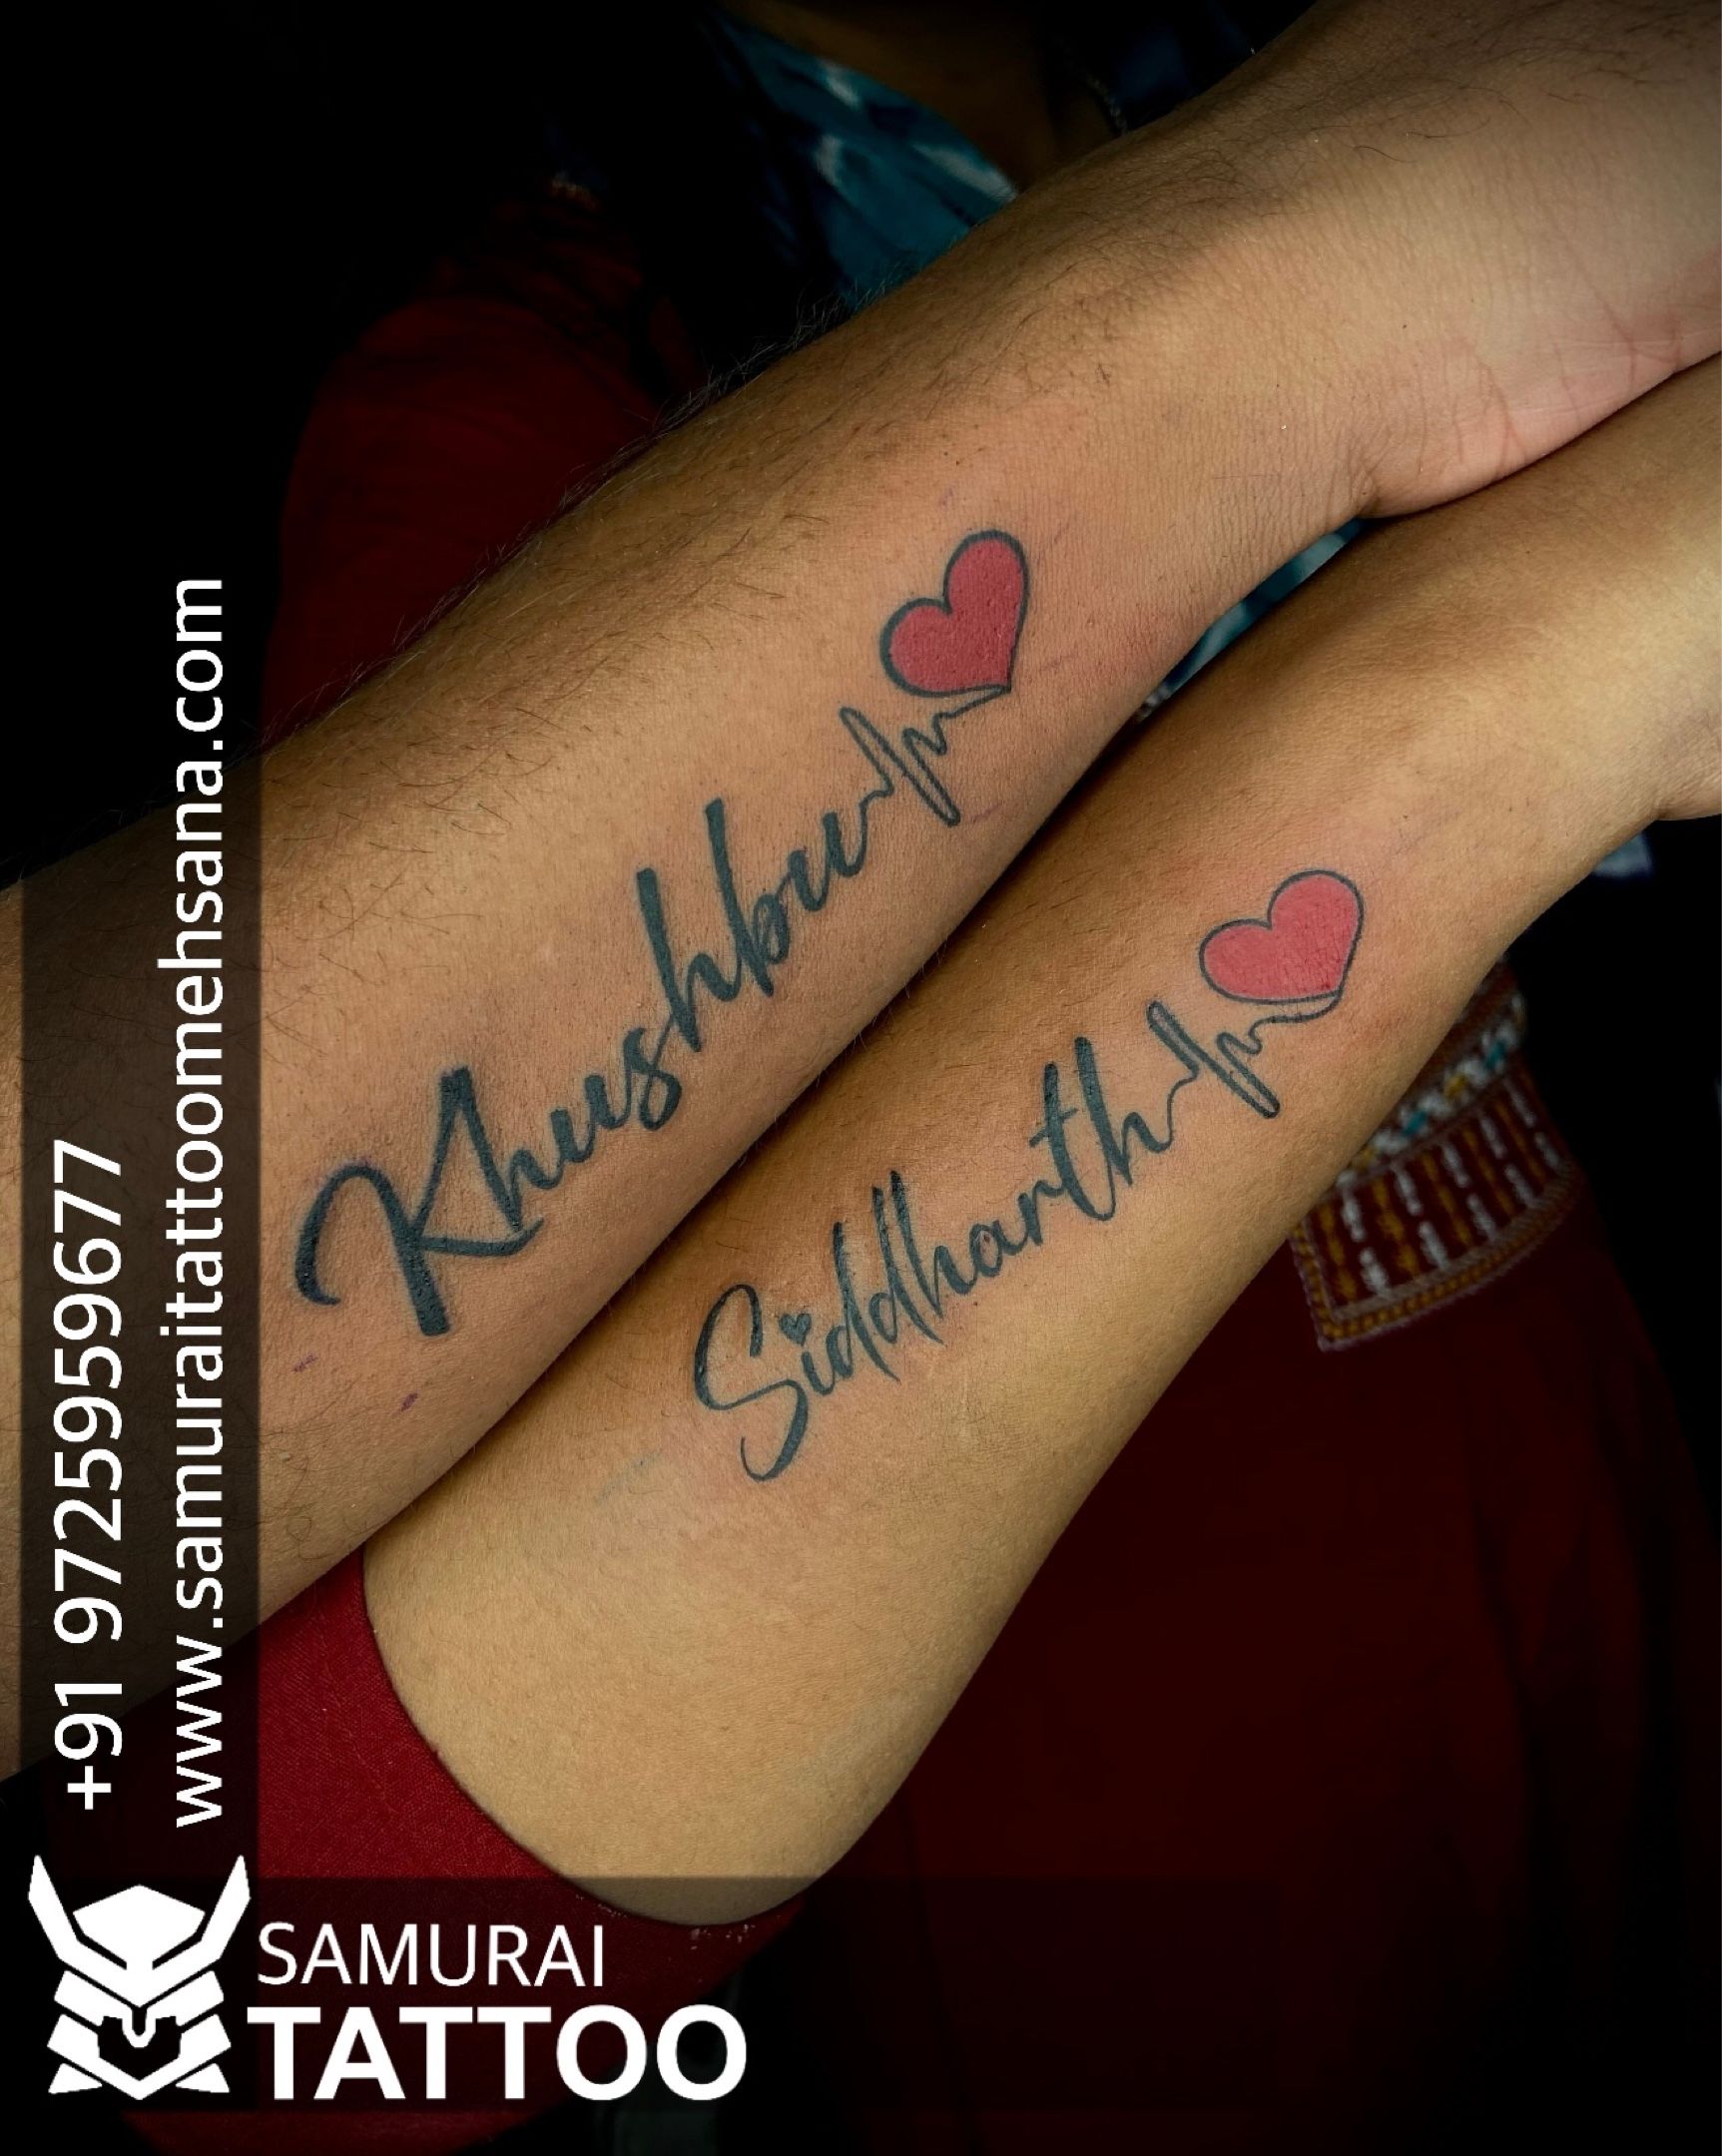 Couple name tattoofor  Inspired Eagle Tattoo Studio  Facebook